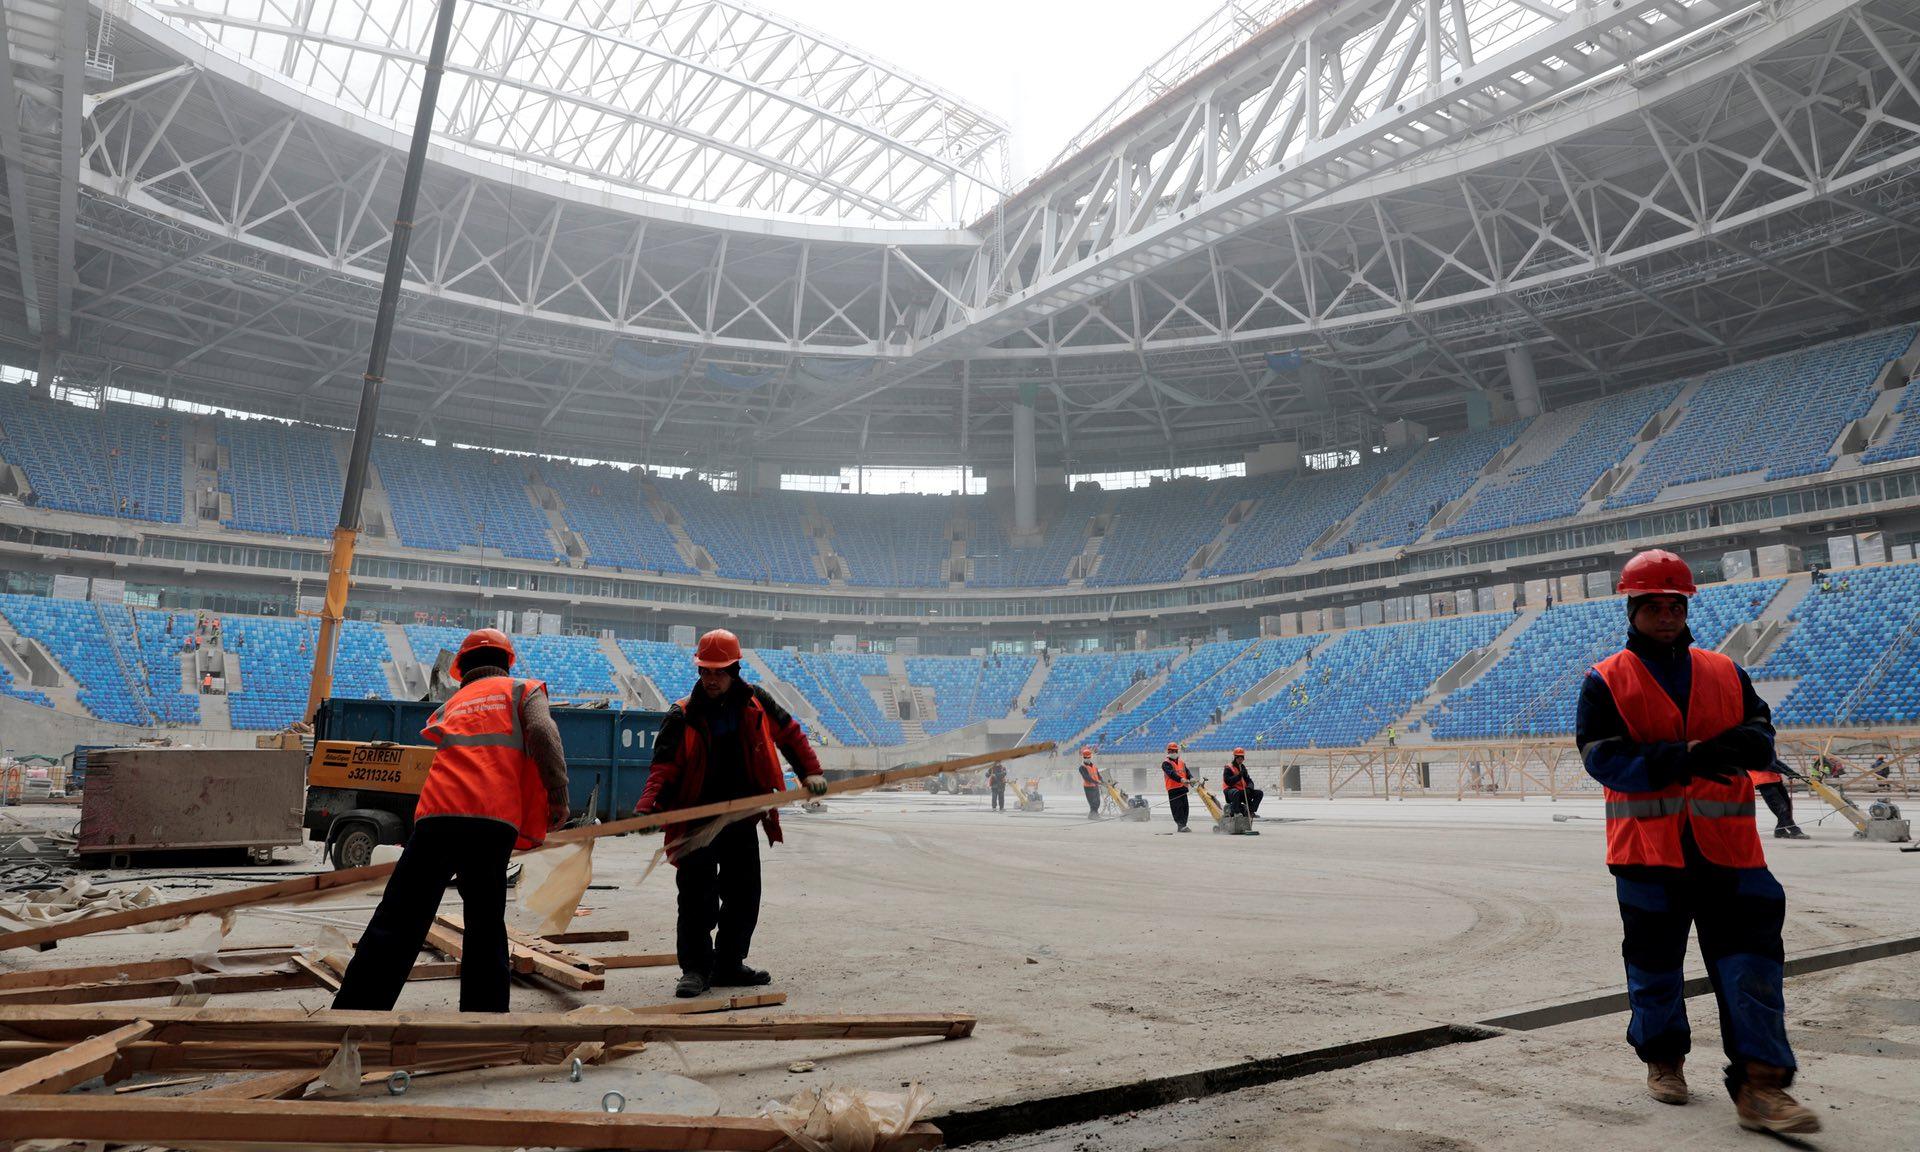 Para buruh ketika melakukan pembangunan Stadion Zenit untuk Piala Dunia 2018 Rusia. Copyright: Internet/Theguardian.com